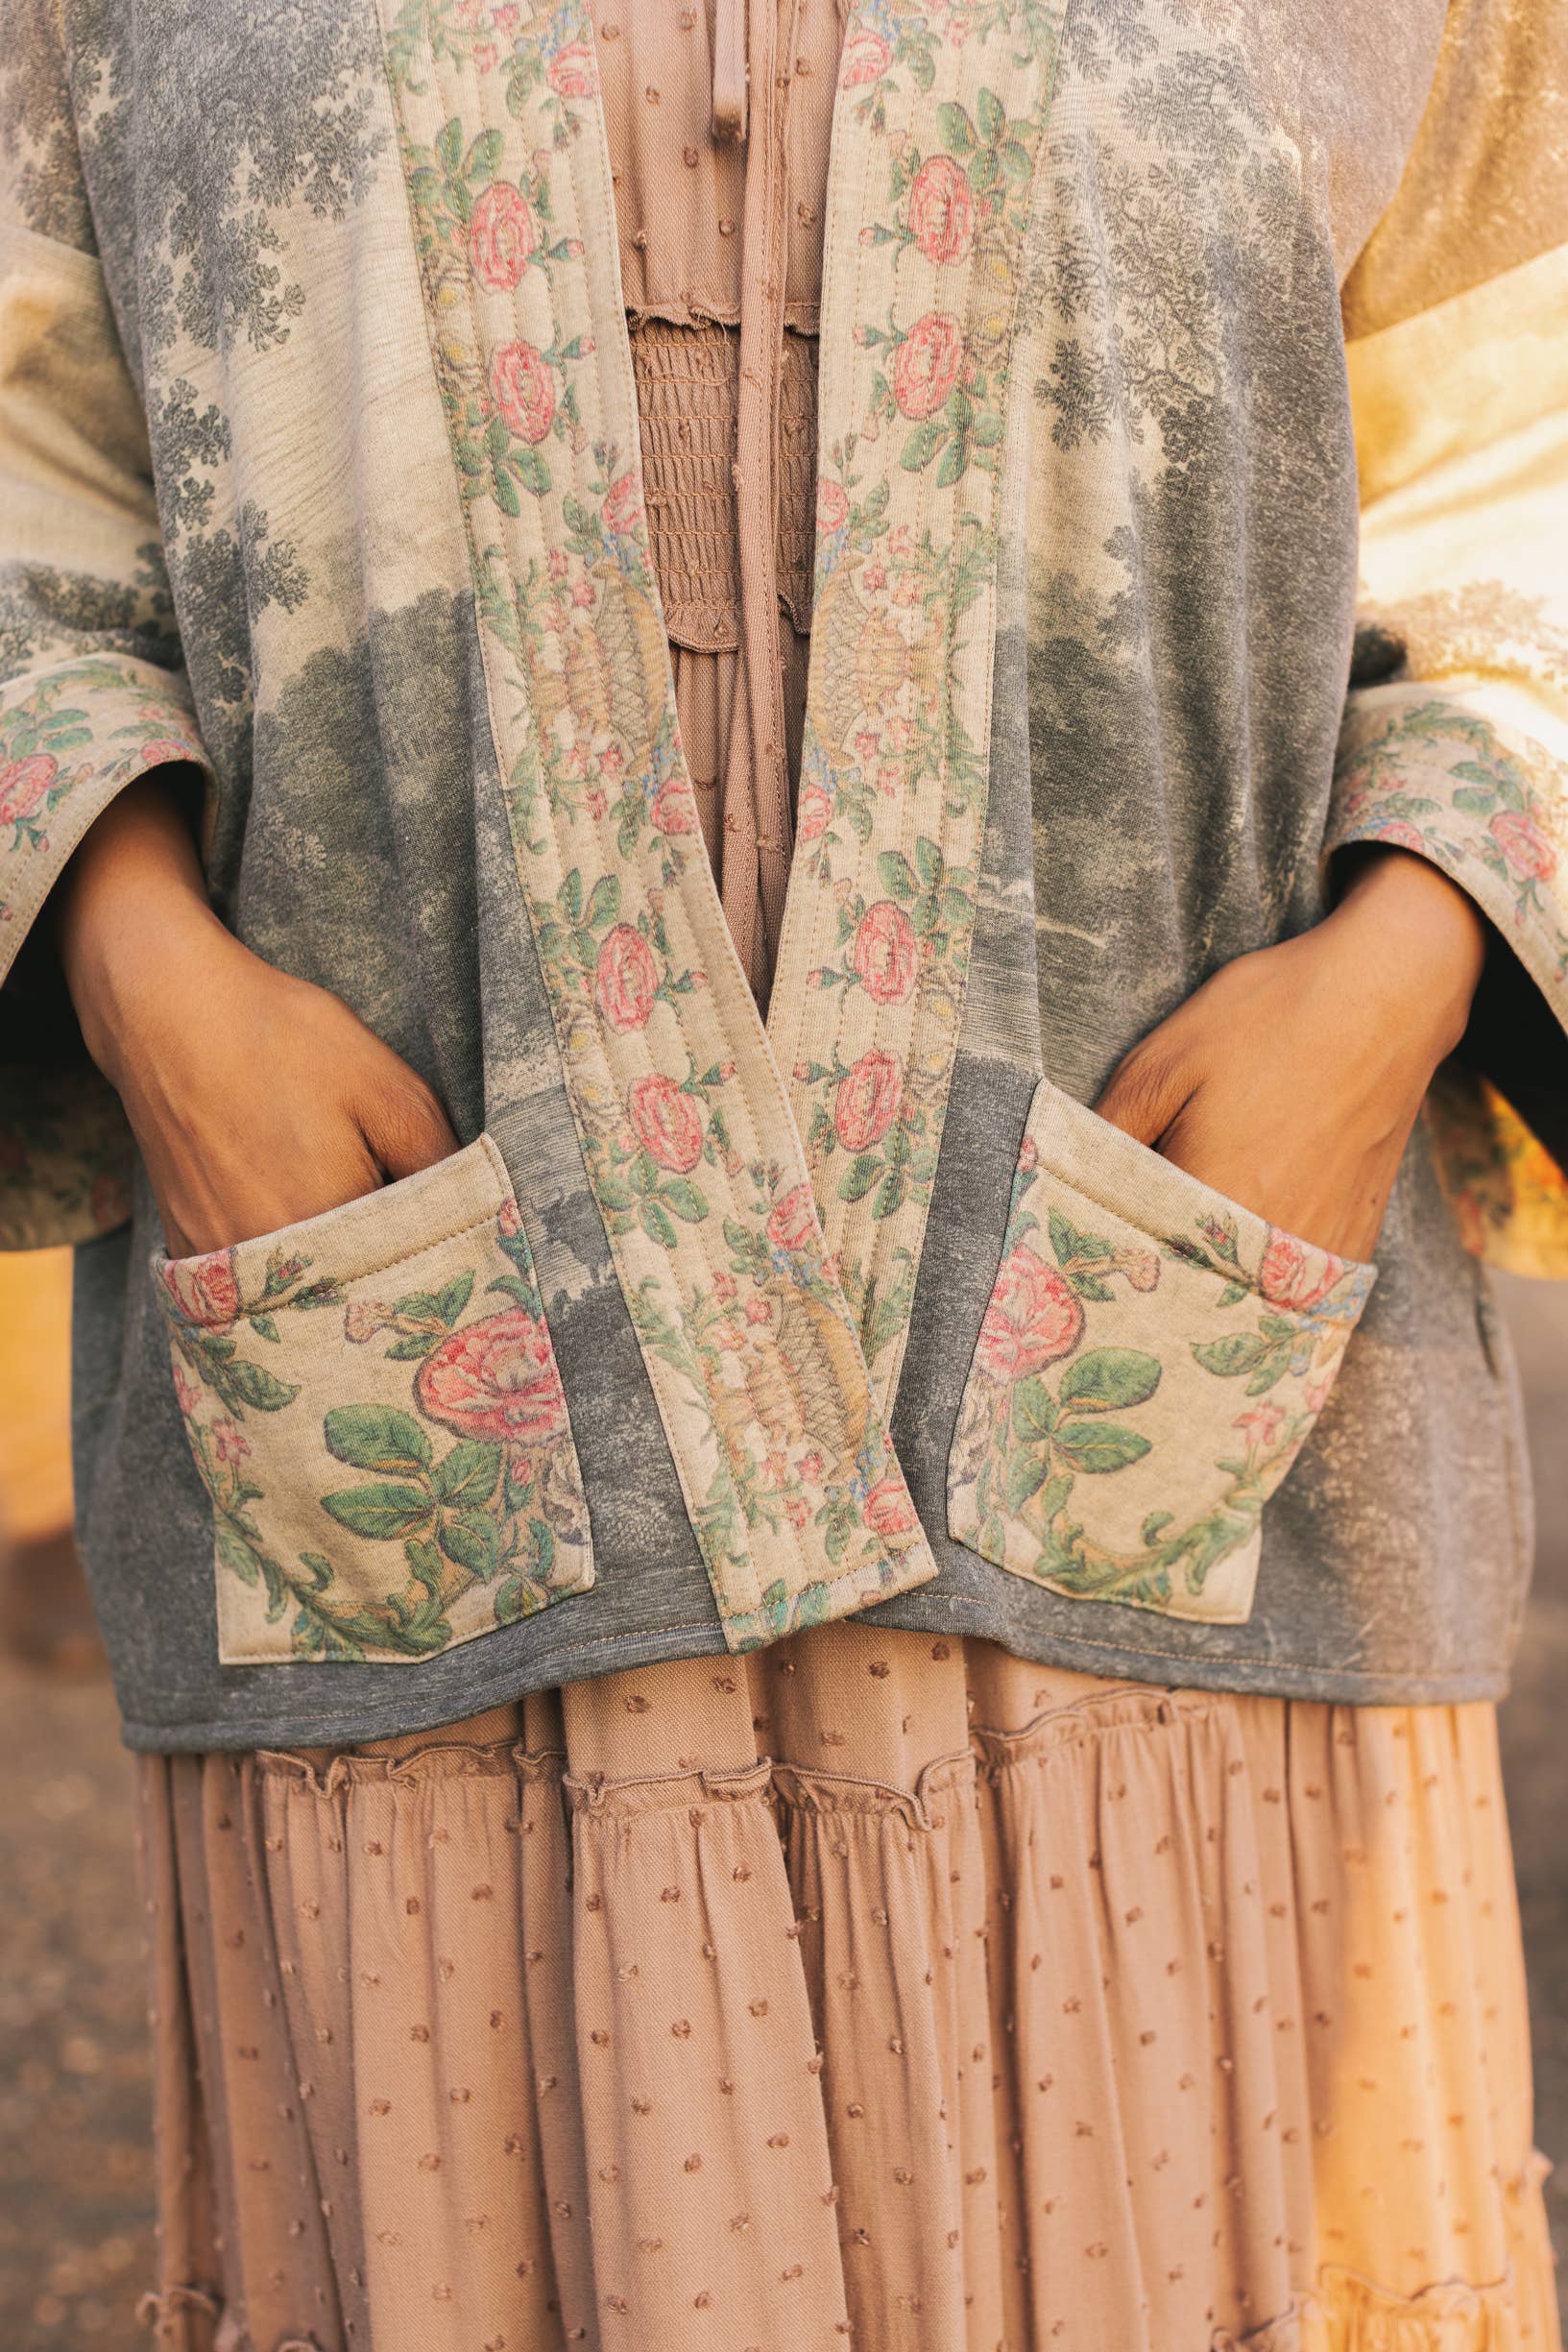 Market of Stars - Still I Rise Fleece Lined Cozy Cardigan Kimono Jacket